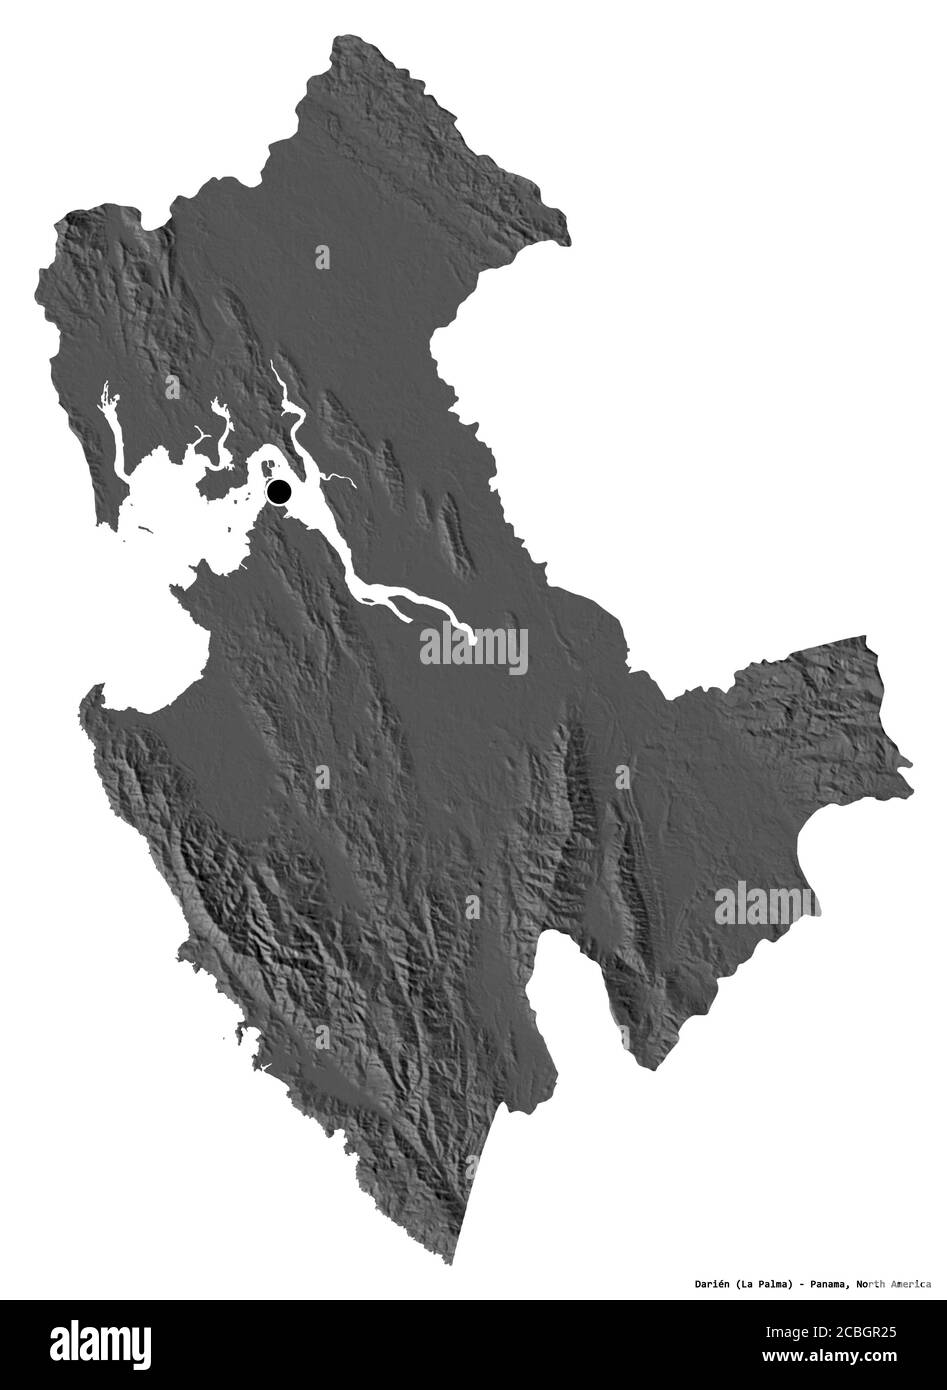 Form von Darién, Provinz Panama, mit seiner Hauptstadt isoliert auf weißem Hintergrund. Höhenkarte mit zwei Ebenen. 3D-Rendering Stockfoto